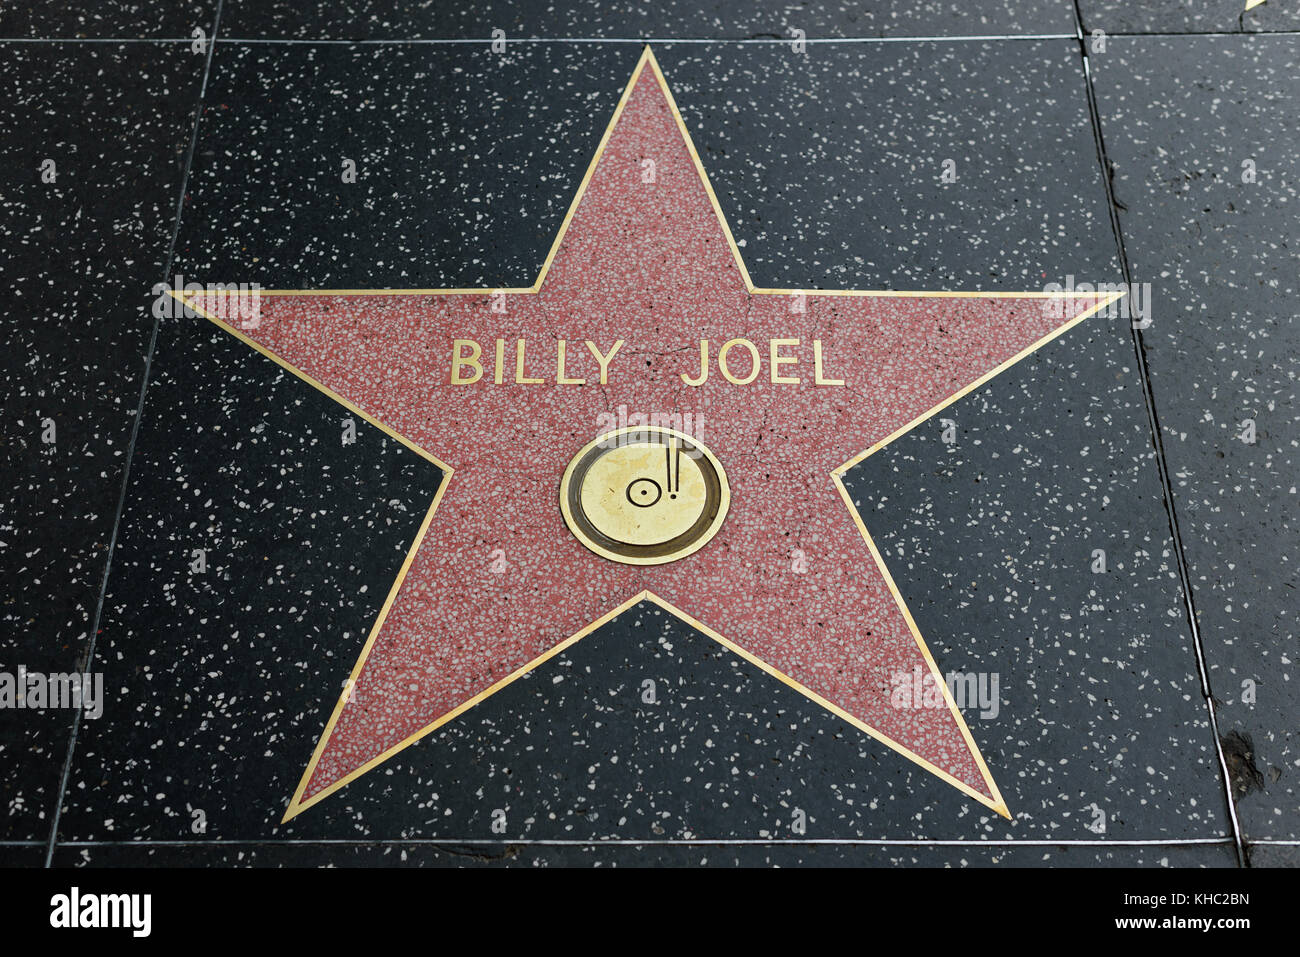 HOLLYWOOD, CA - DÉCEMBRE 06 : Billy Joel star sur le Hollywood Walk of Fame à Hollywood, Californie, le 6 décembre 2016. Banque D'Images